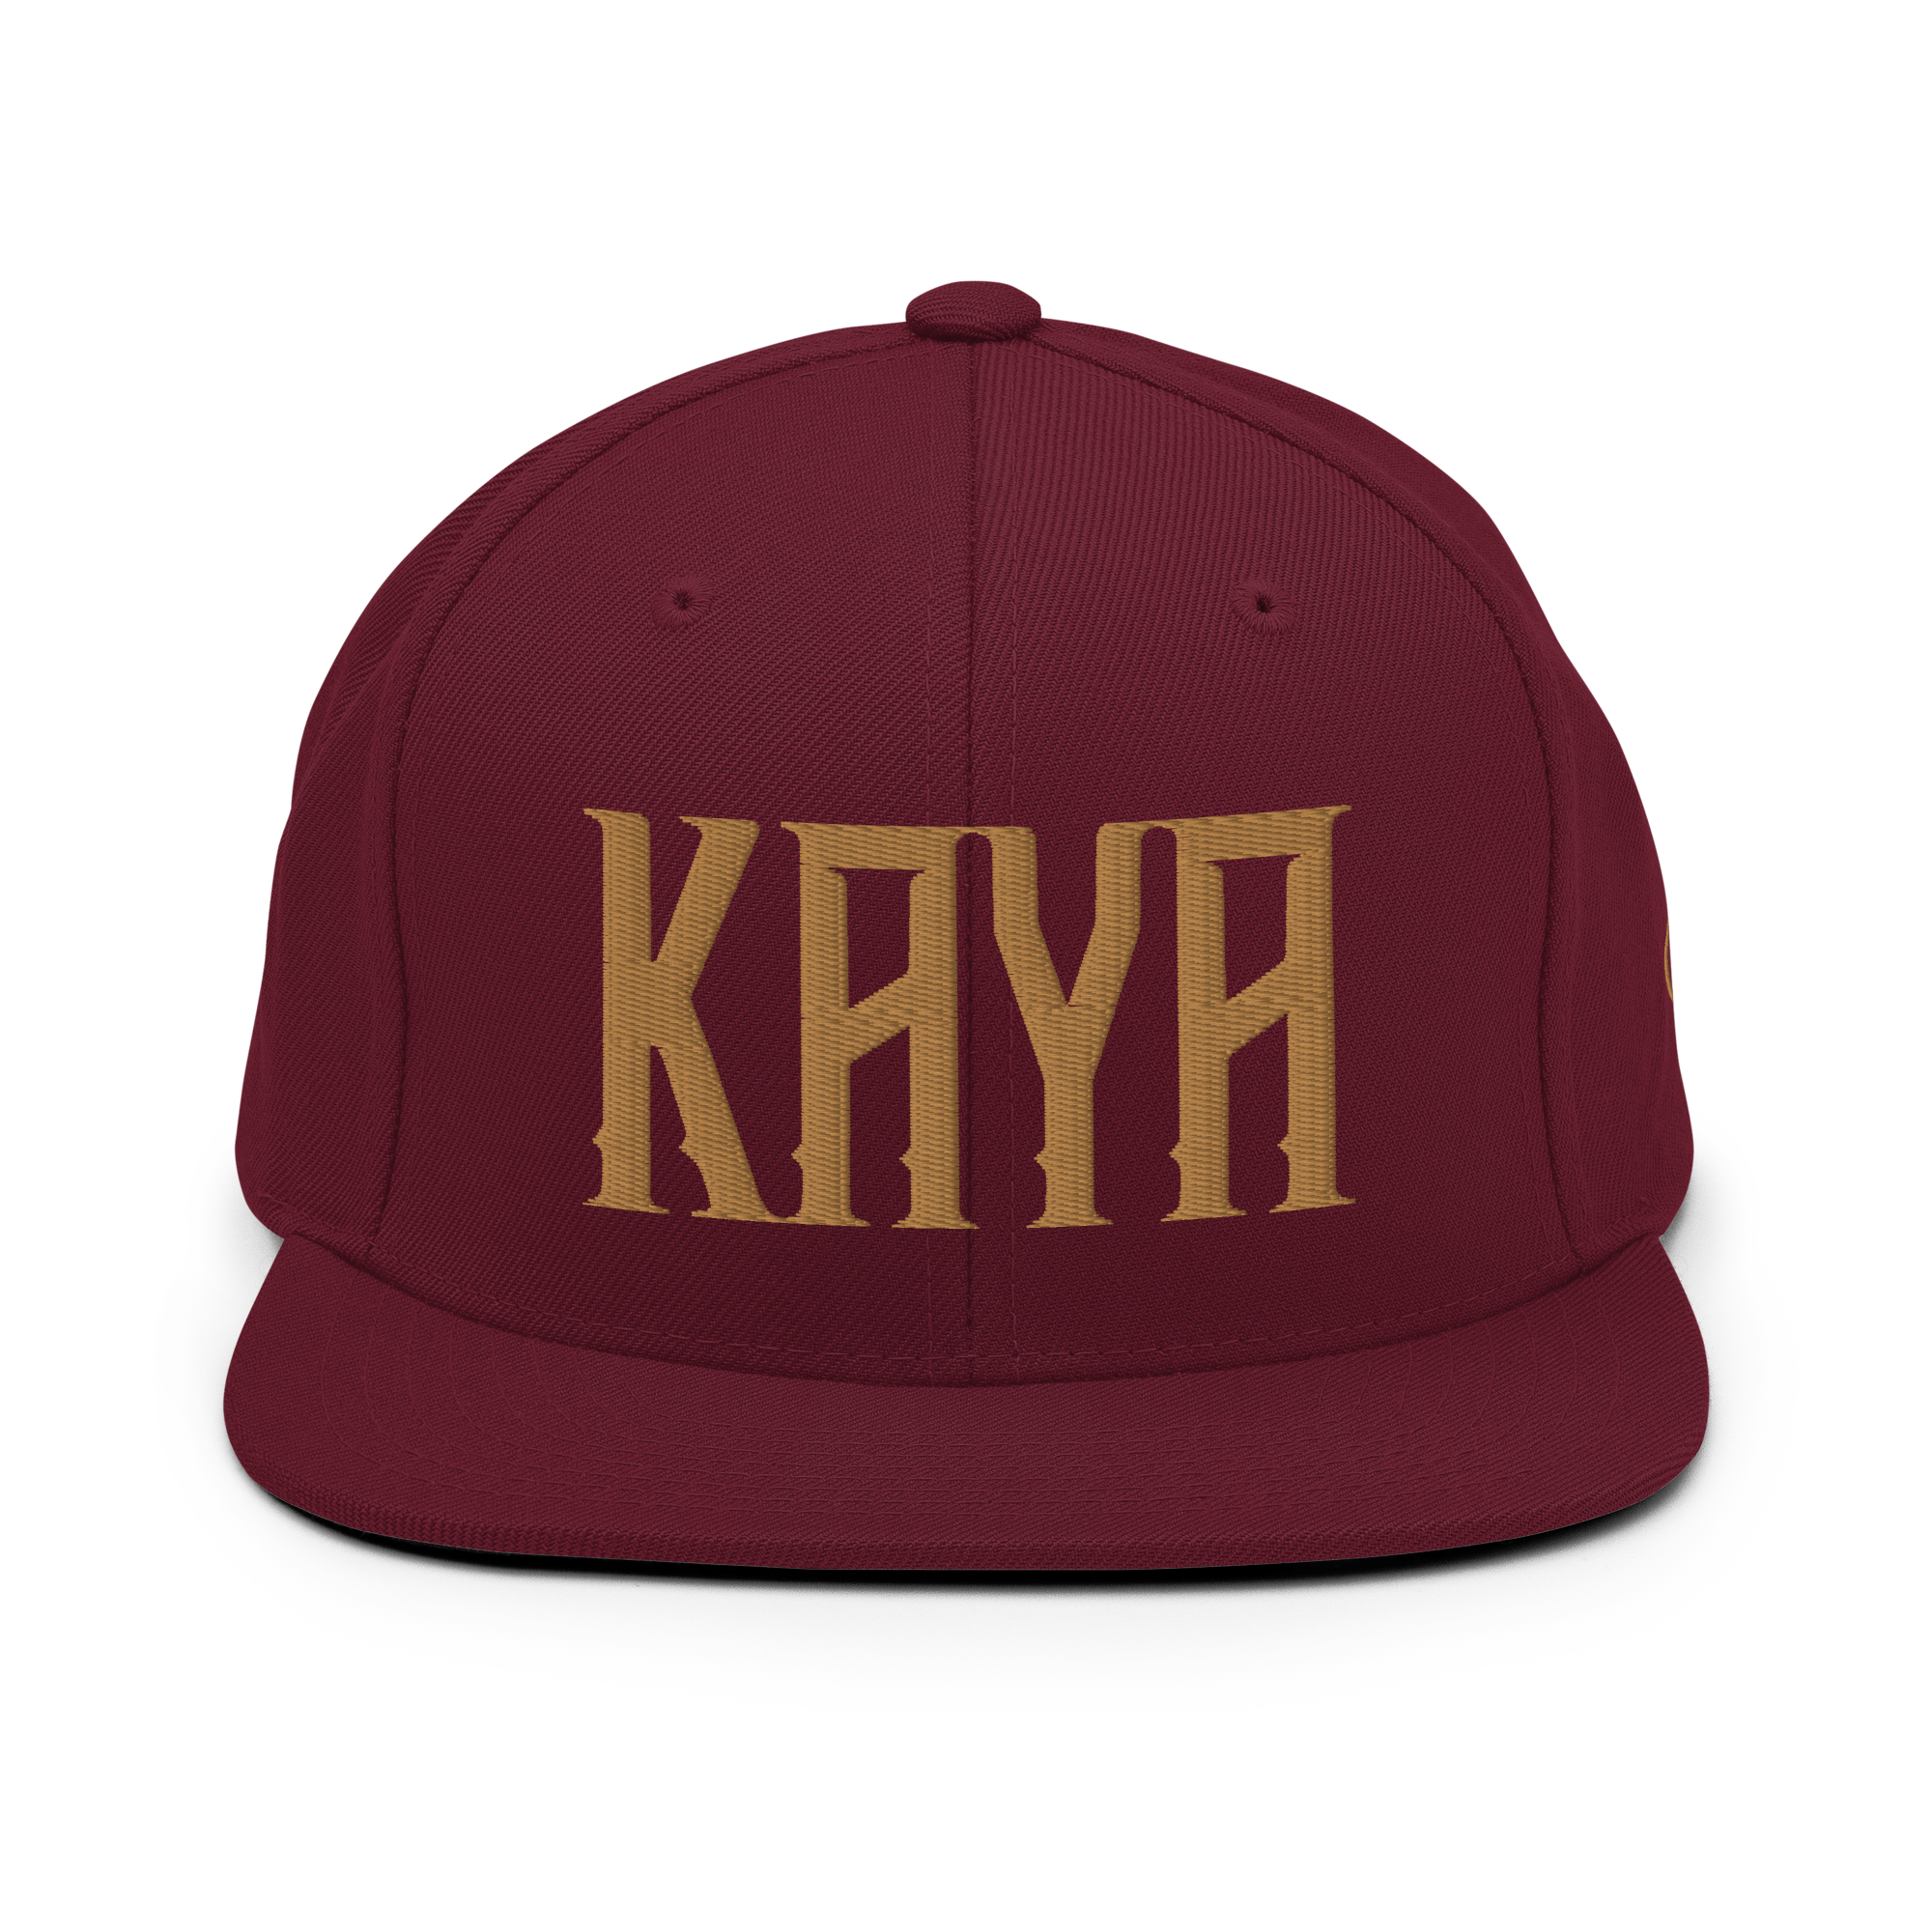 Unisex Snapback Gold Kaya Hat